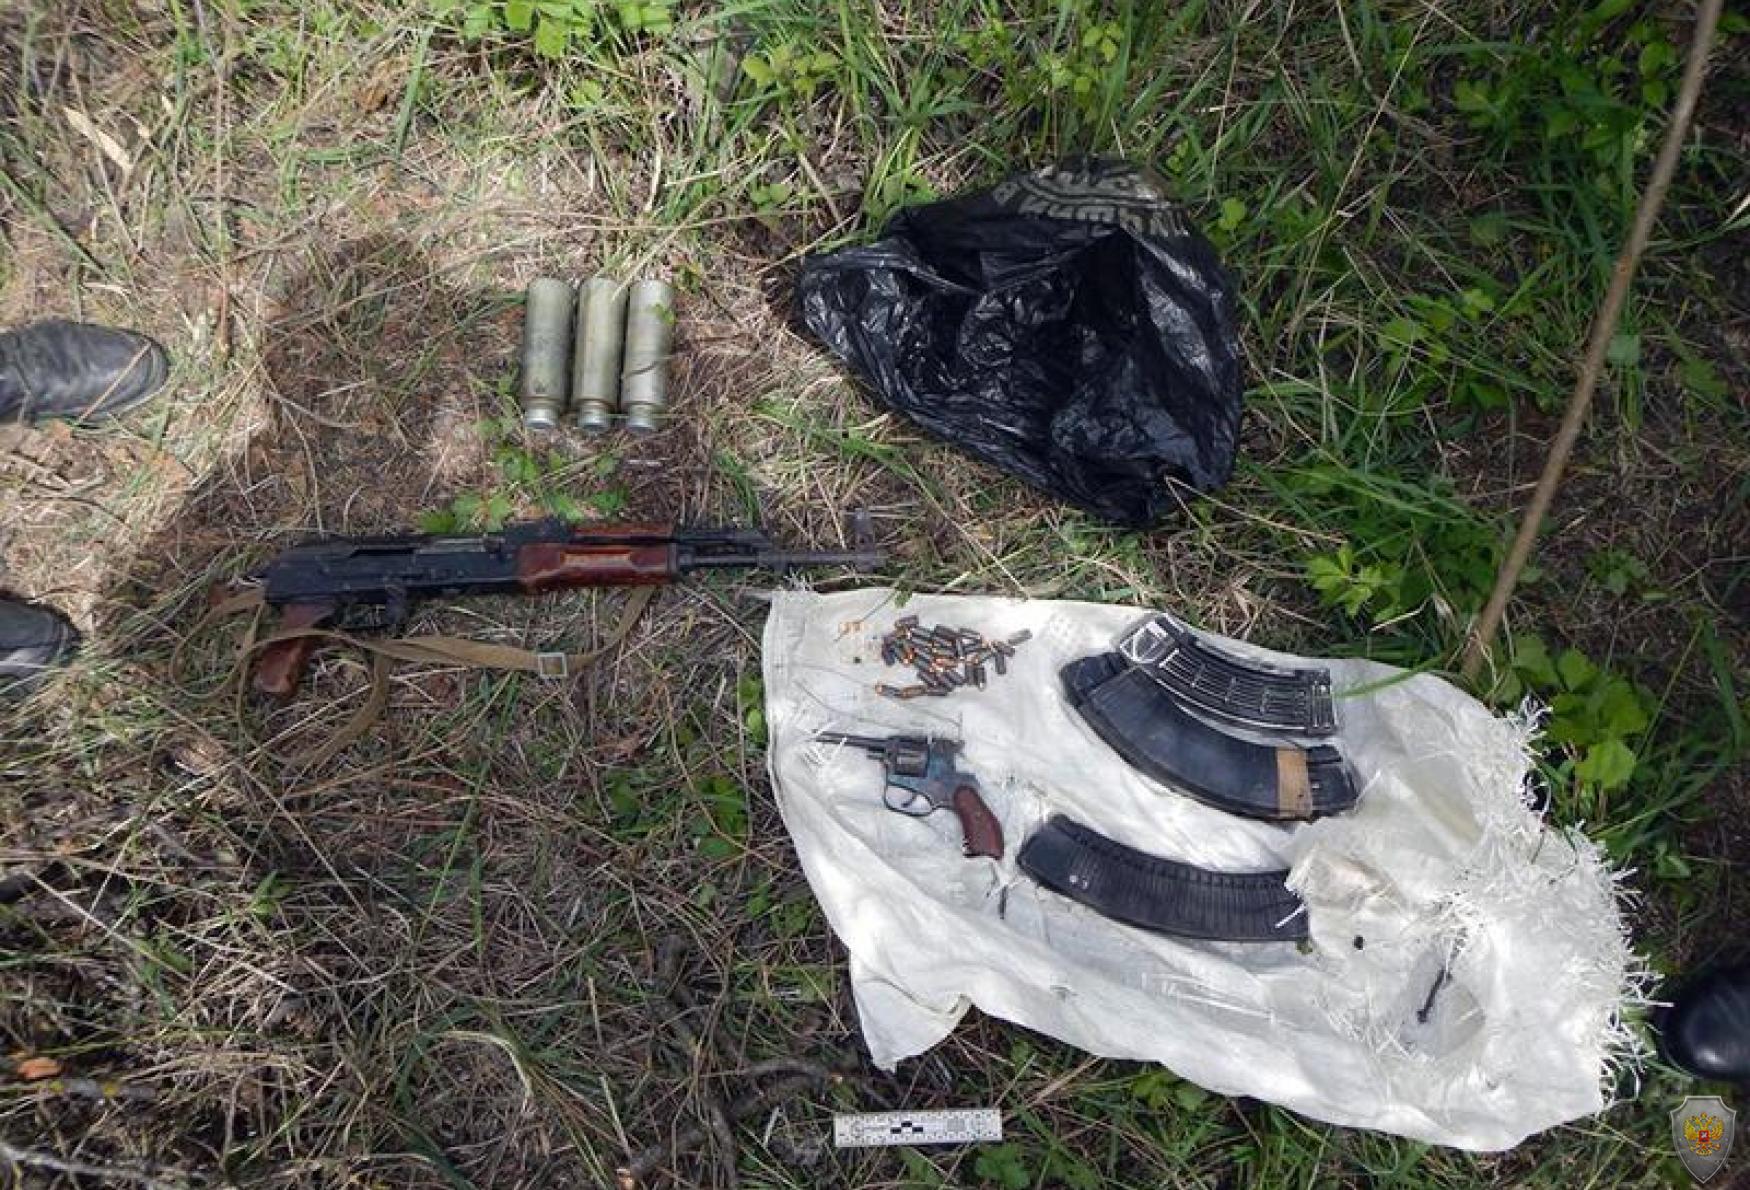 В Дагестане обнаружены три бандитских тайника с большим количеством боеприпасов, оружием и взрывчаткой